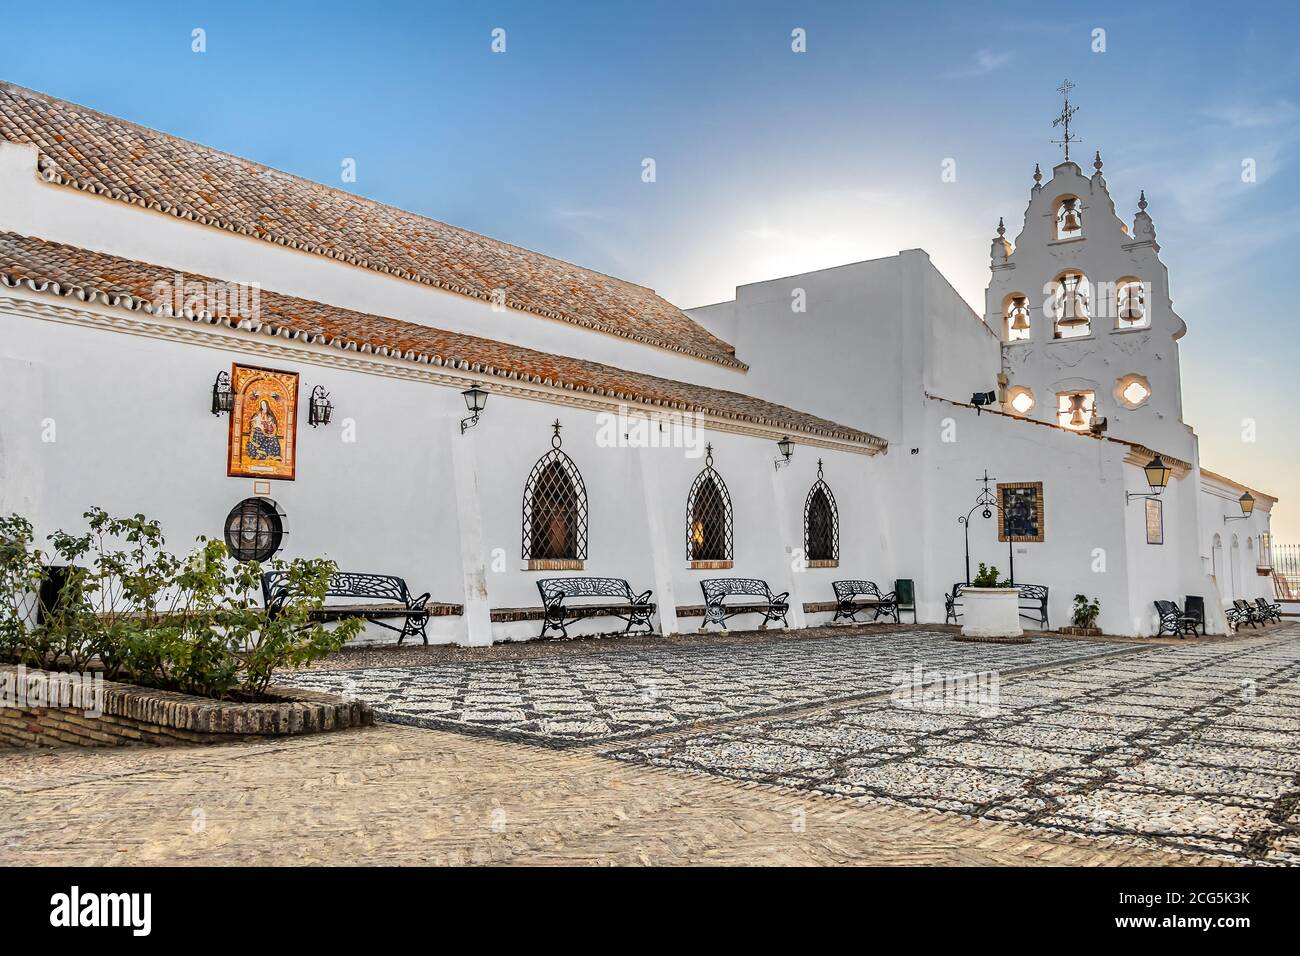 Huelva, Espagne - 8 septembre 2020: Vue du Sanctuaire Virgen de la Cinta depuis les Jardins, rétroéclairé avec des torches solaires, vierge patron de huelva depuis 1586 Banque D'Images